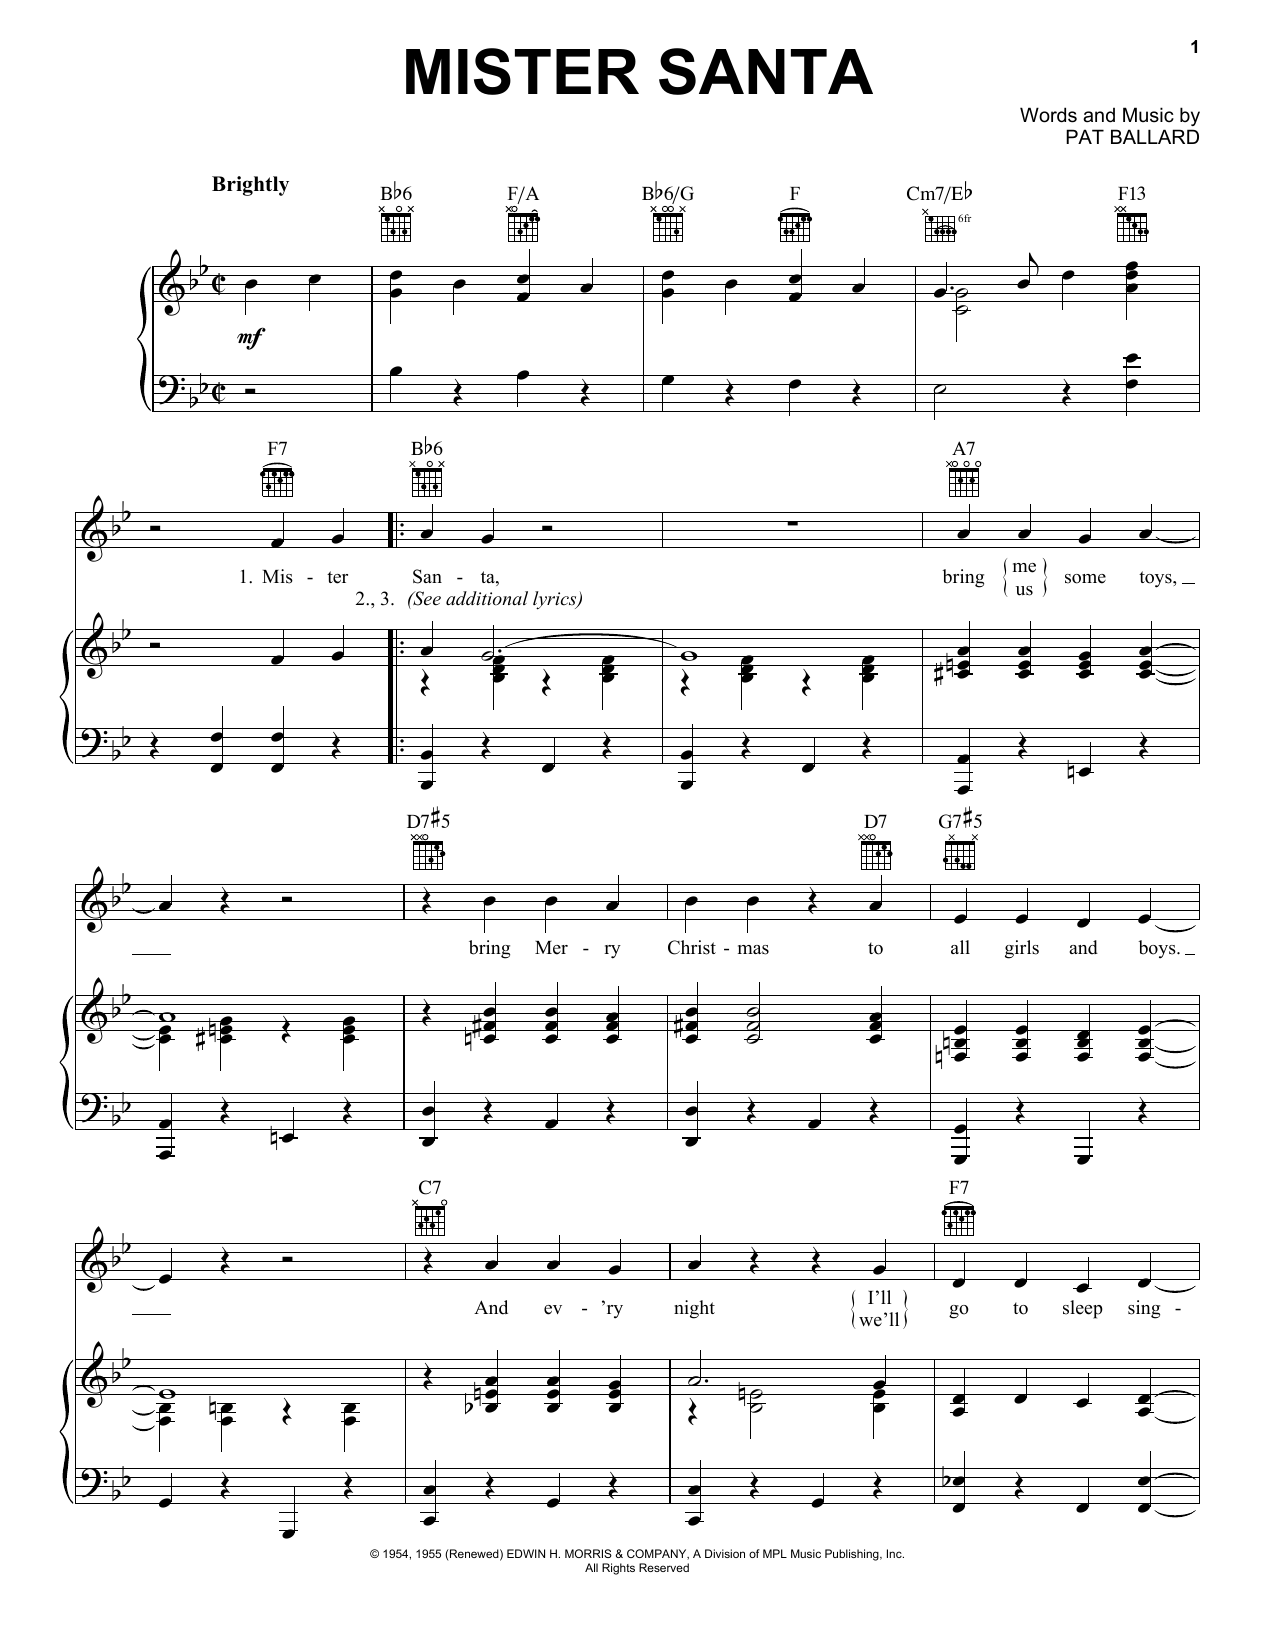 Pat Ballard Mister Santa Sheet Music Notes & Chords for Real Book – Melody, Lyrics & Chords - Download or Print PDF